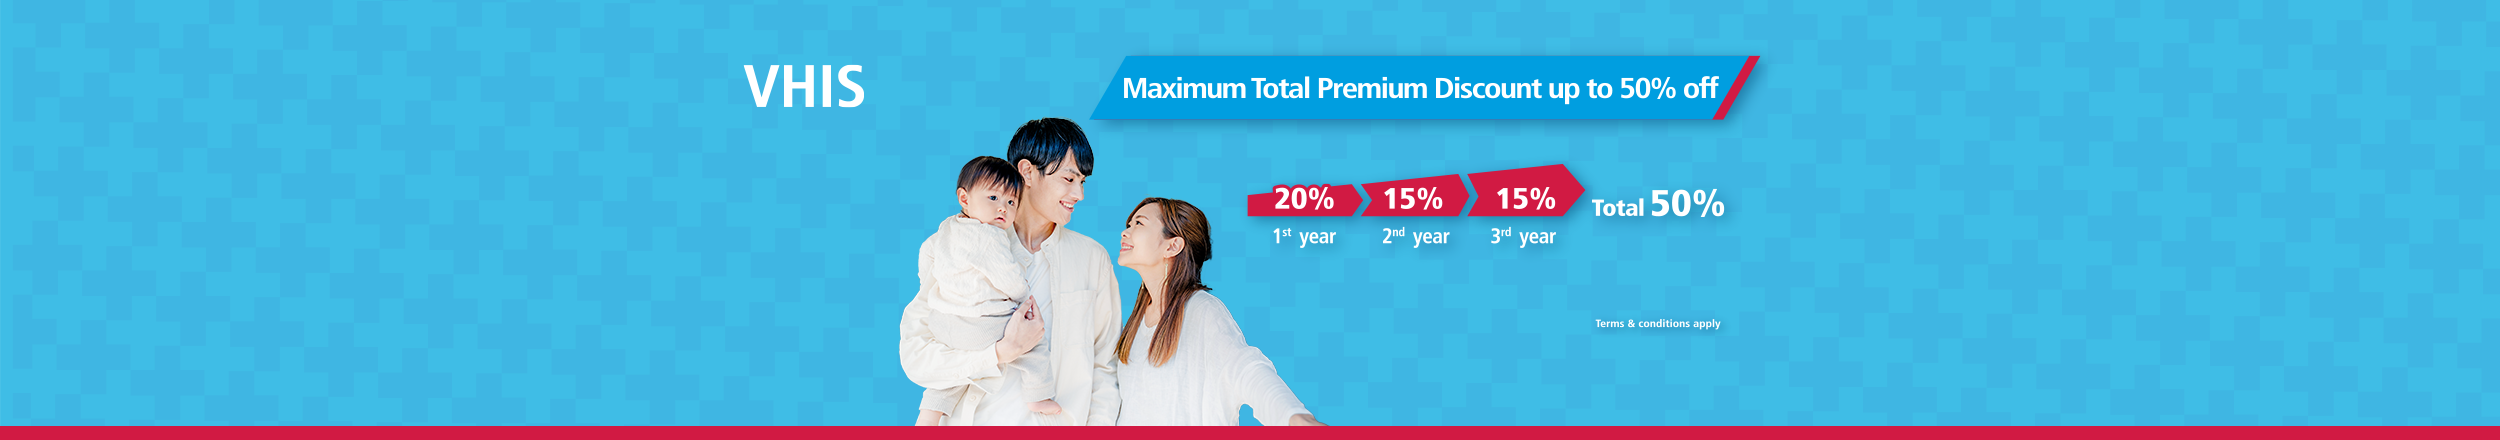 Maximum Total Premium Discount up to 50% off